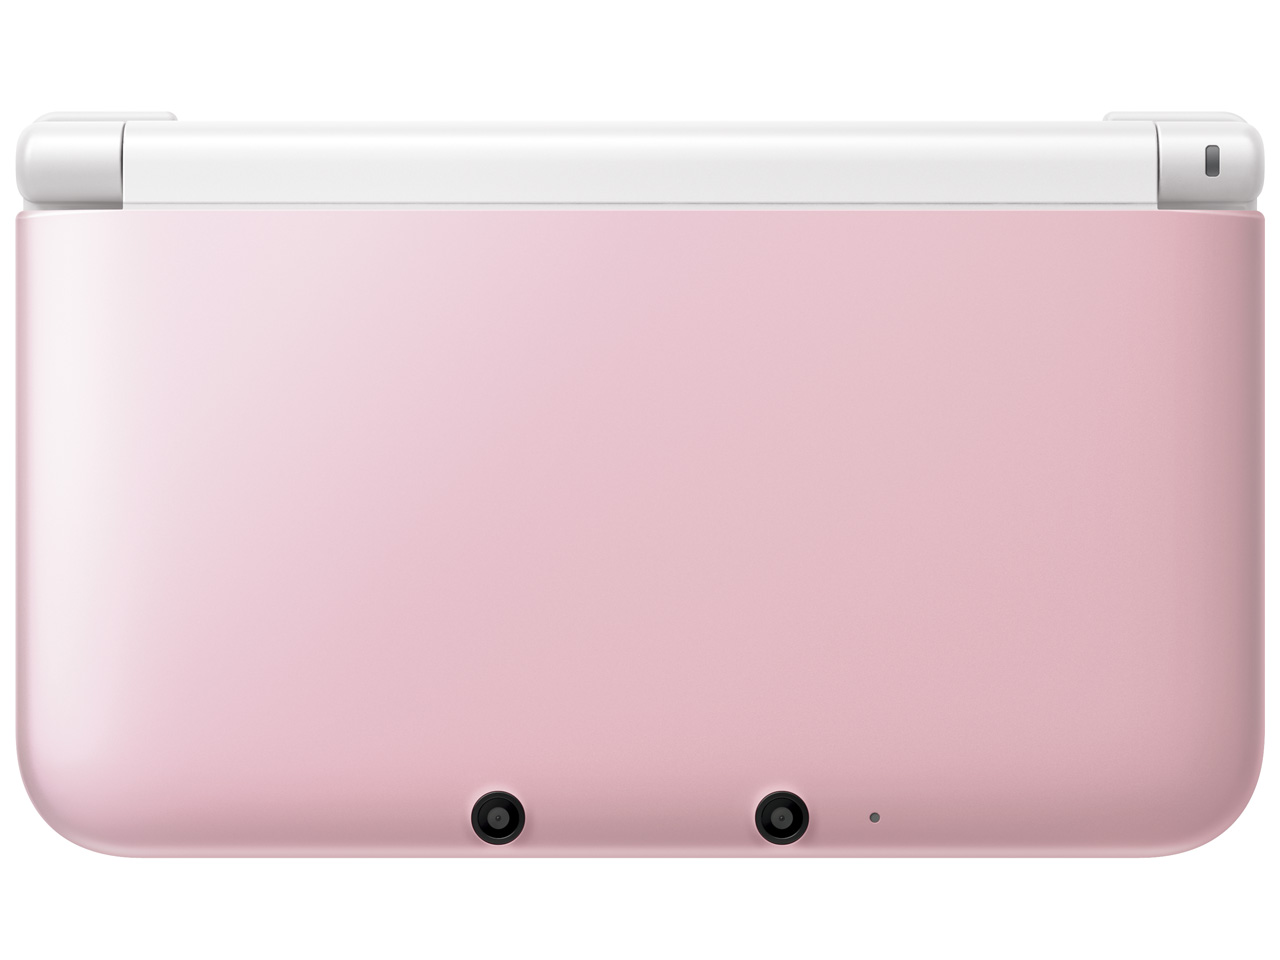 価格.com - ニンテンドー3DS LL ピンク×ホワイト の製品画像